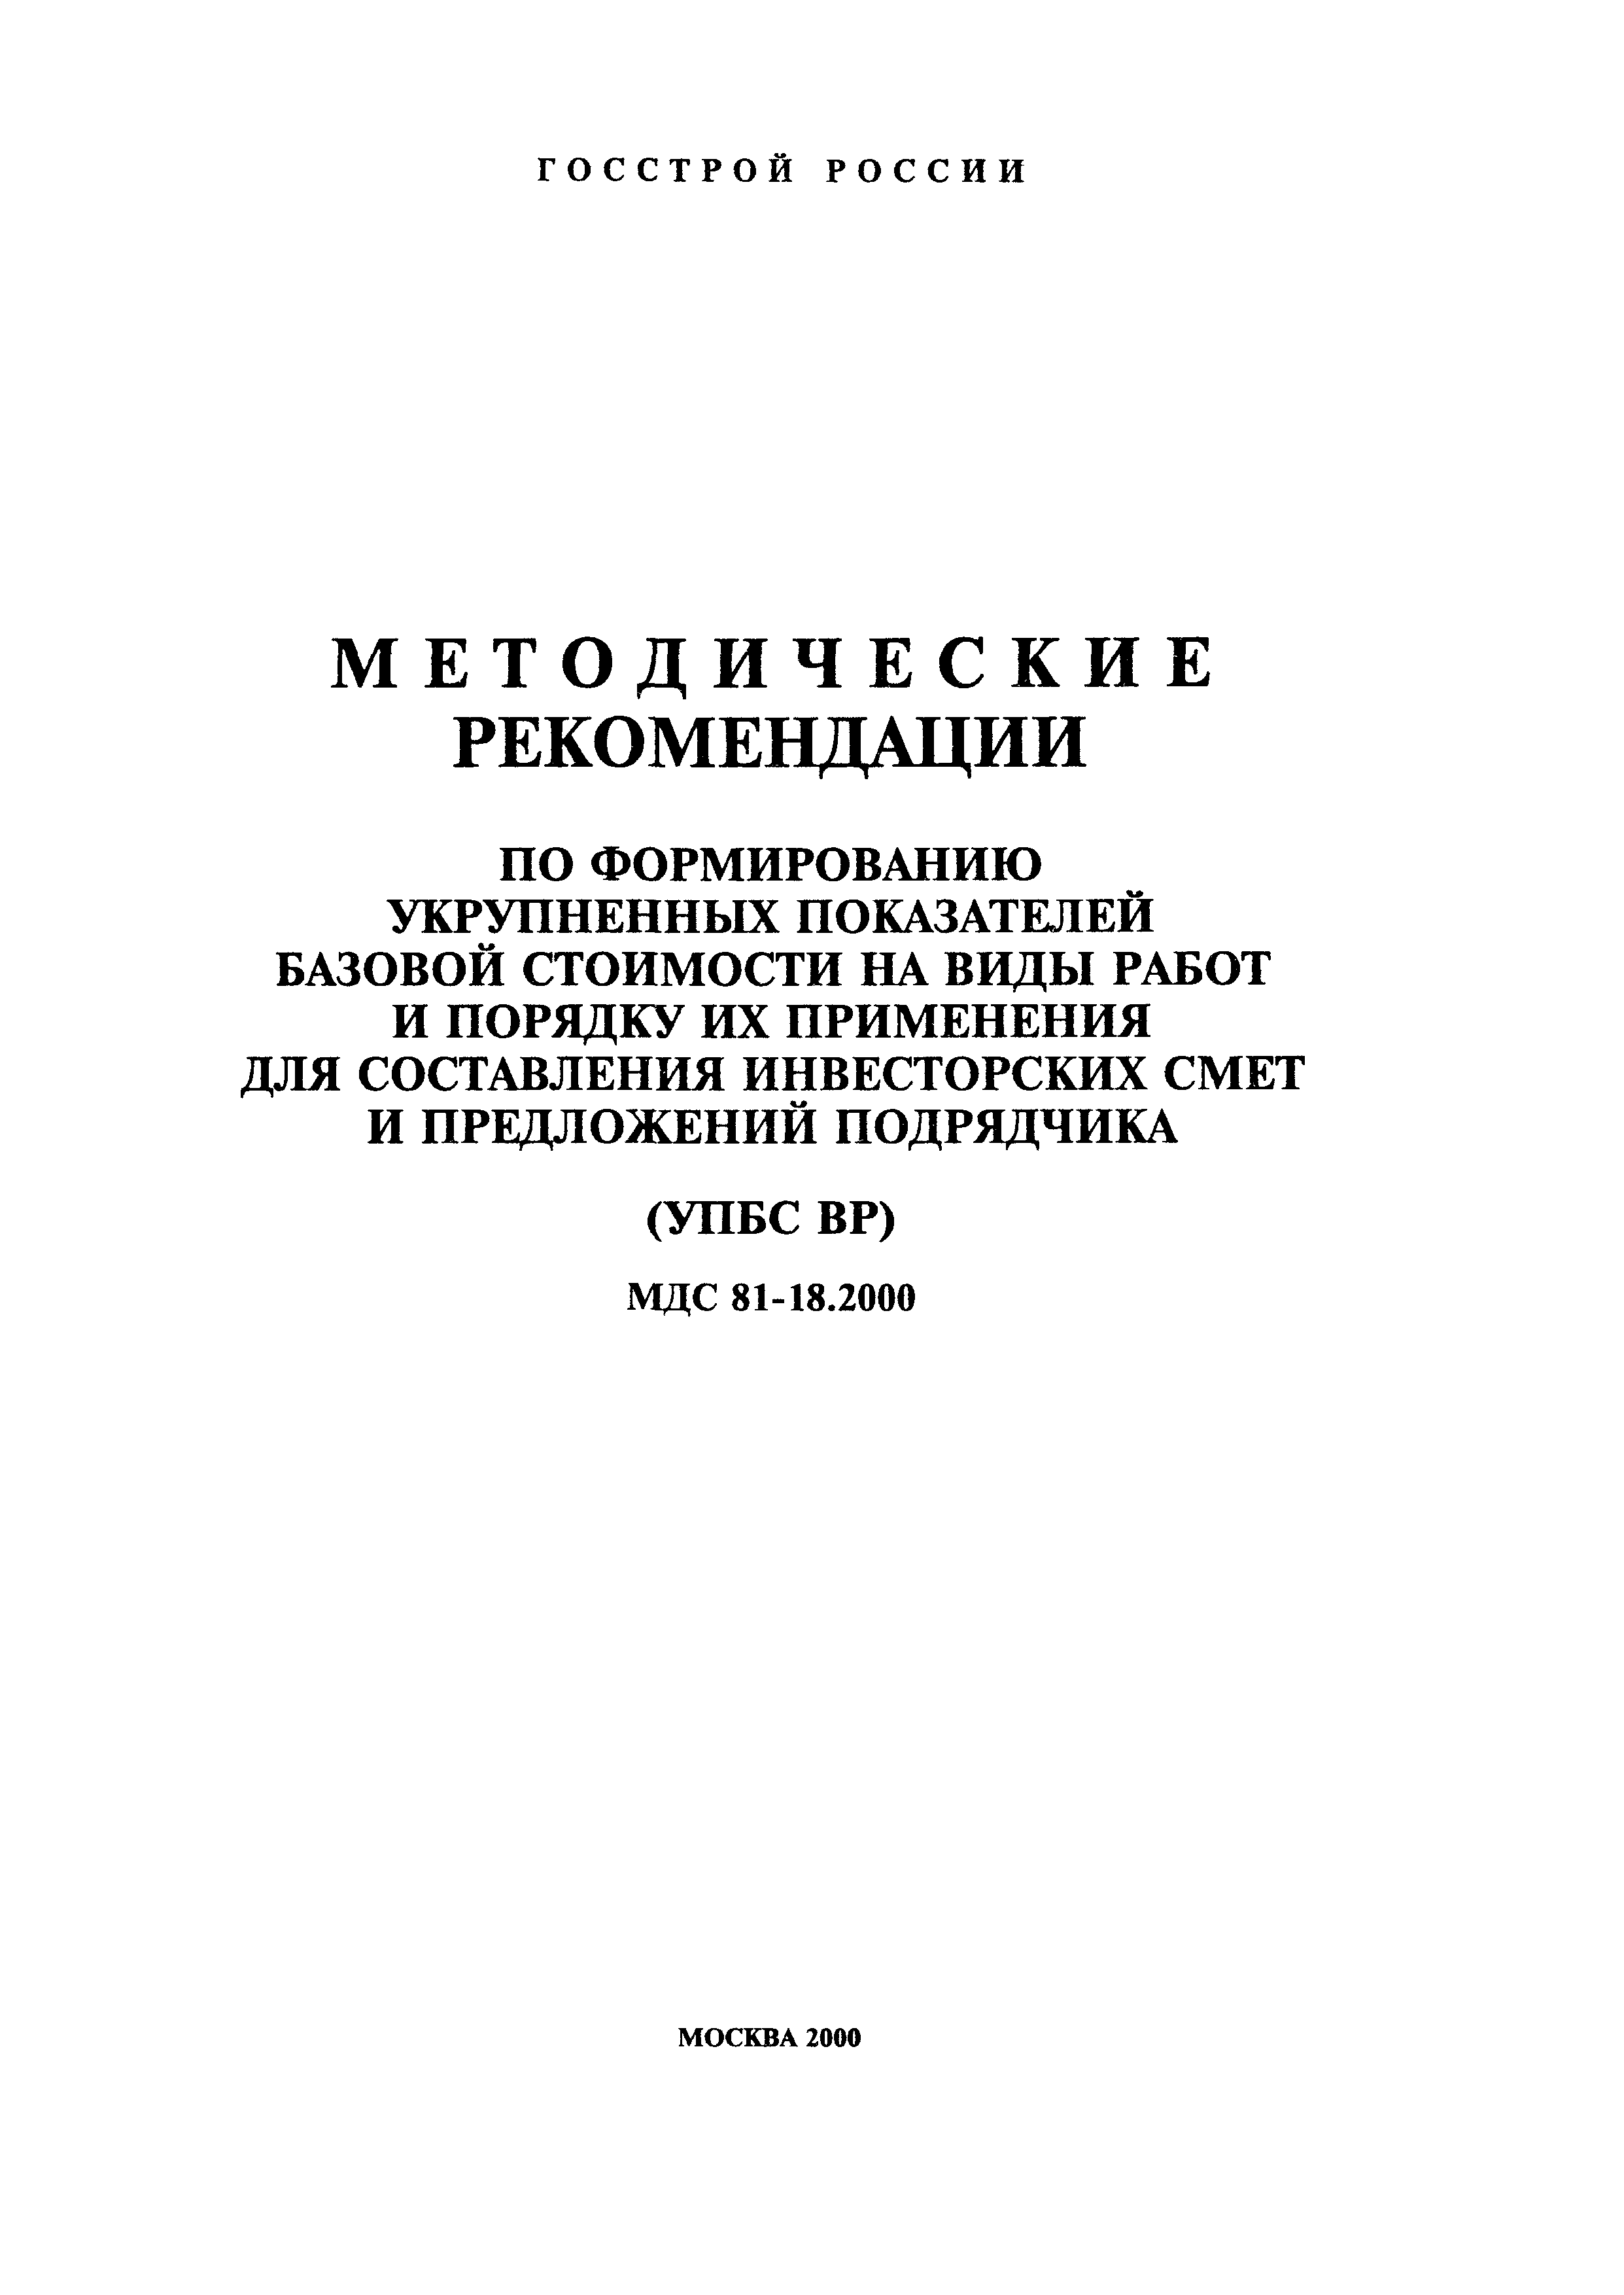 МДС 81-18.2000